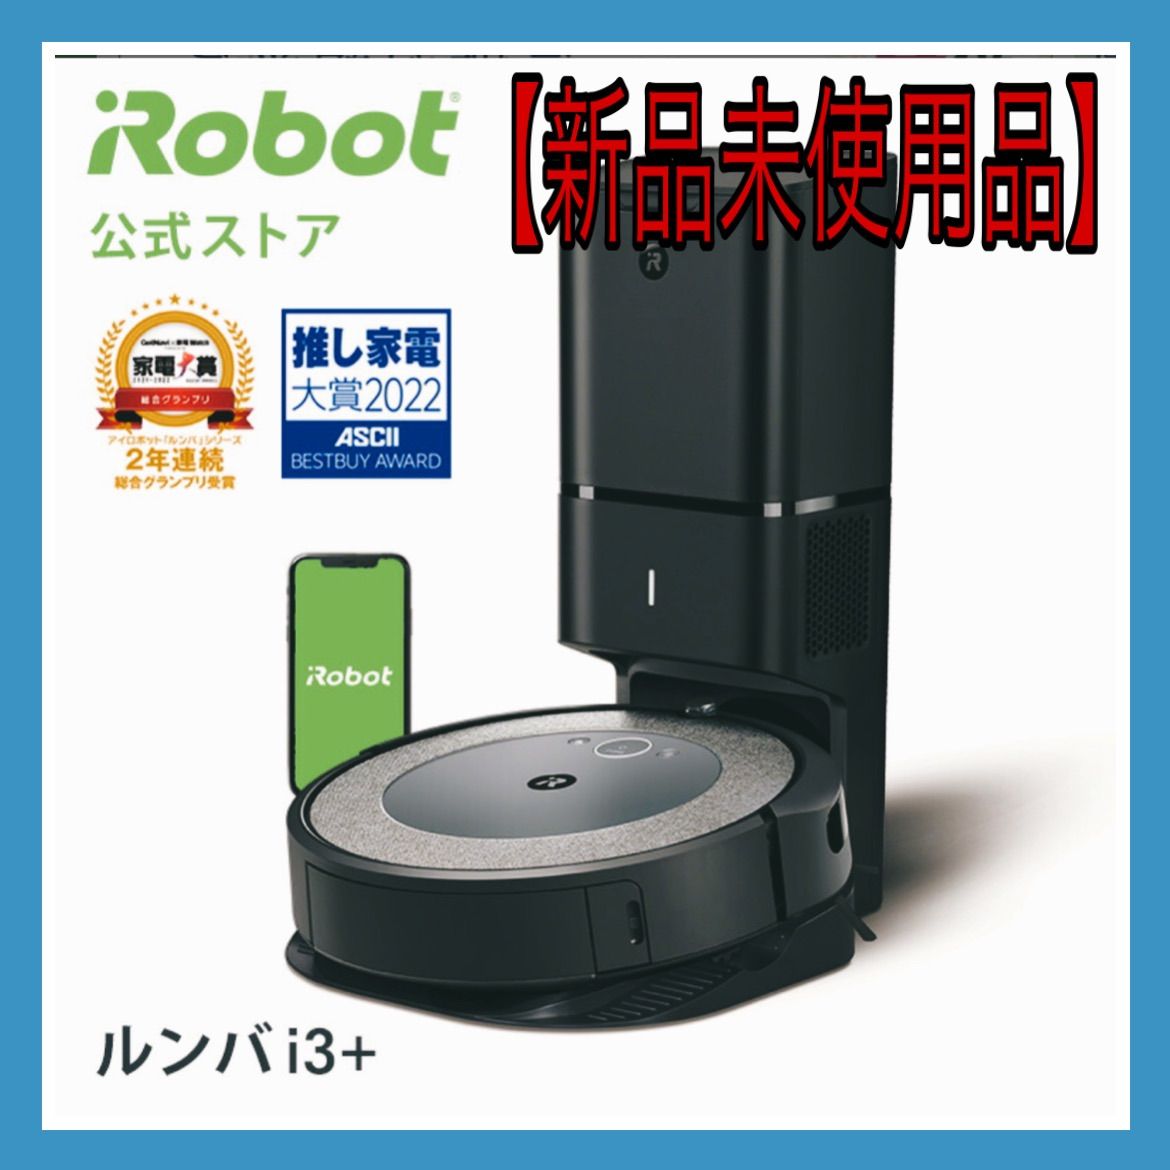 【新品未使用品】ルンバ i3+ アイロボット ロボット掃除機